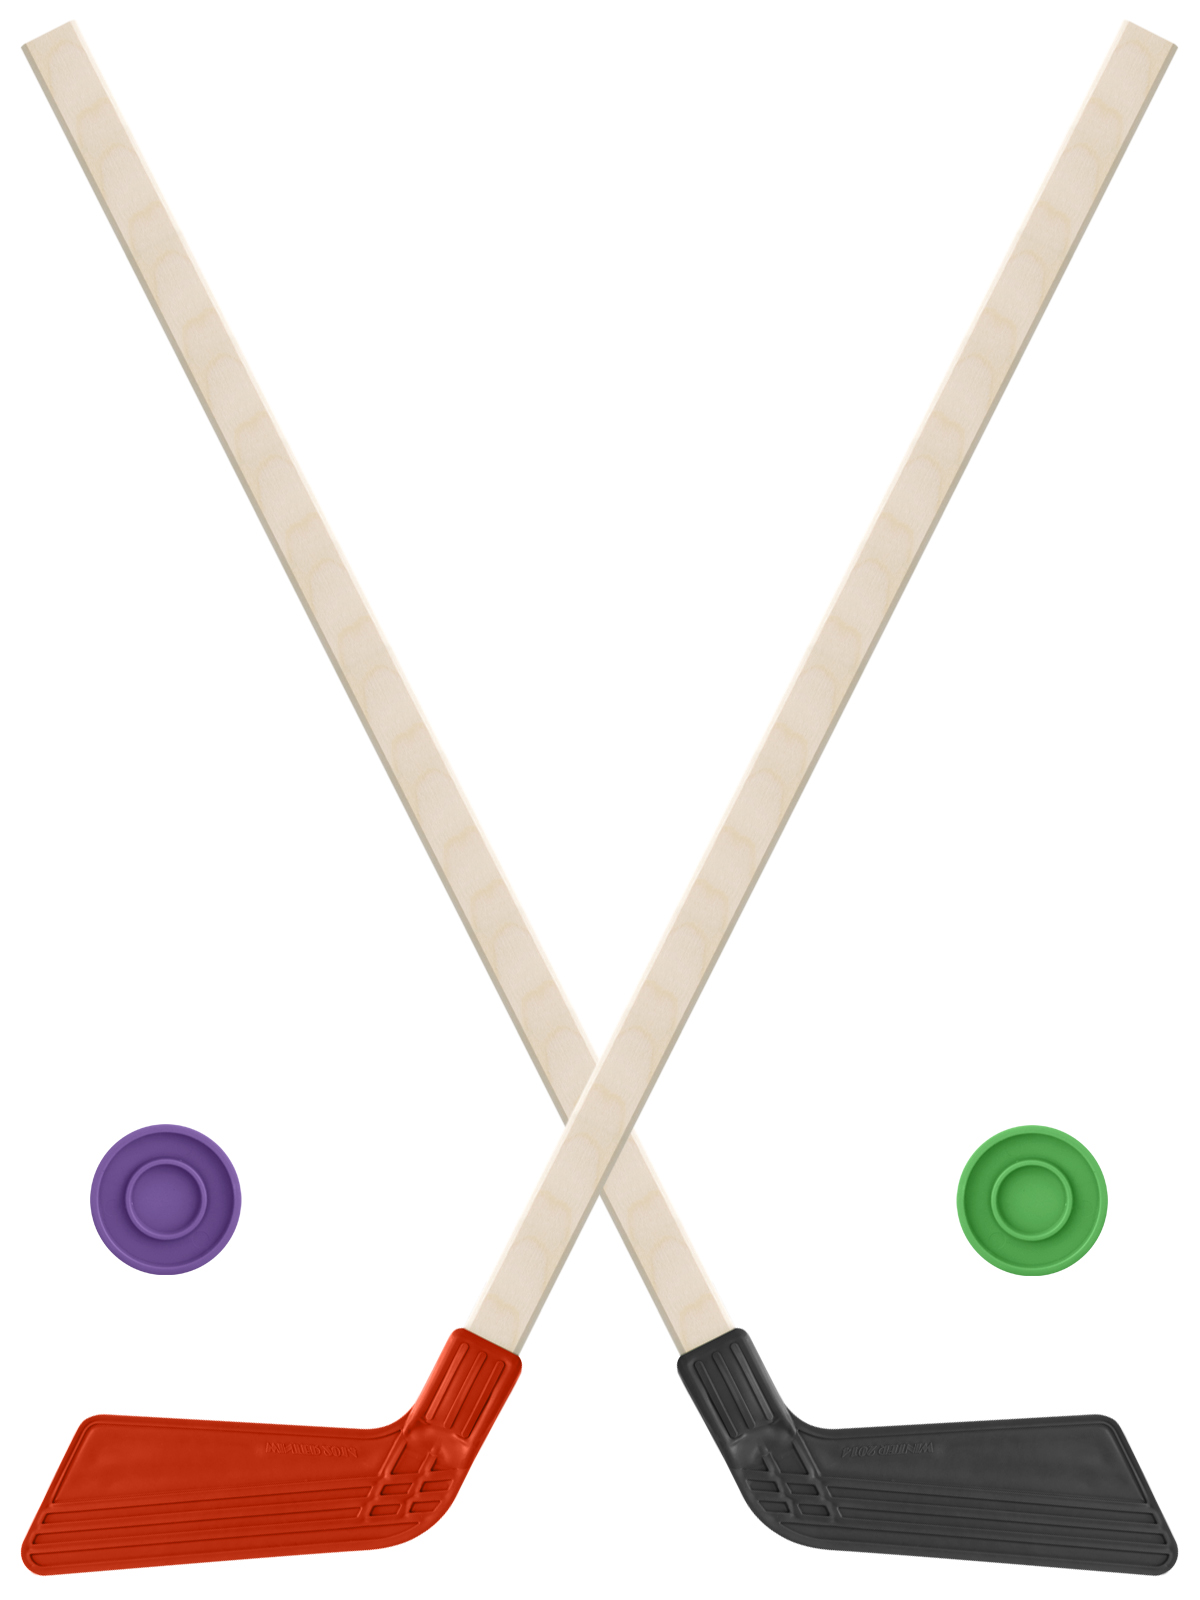 Детский хоккейный набор Задира-плюс, кюшки хоккейные 80 см (красная и черная) +2 шайбы